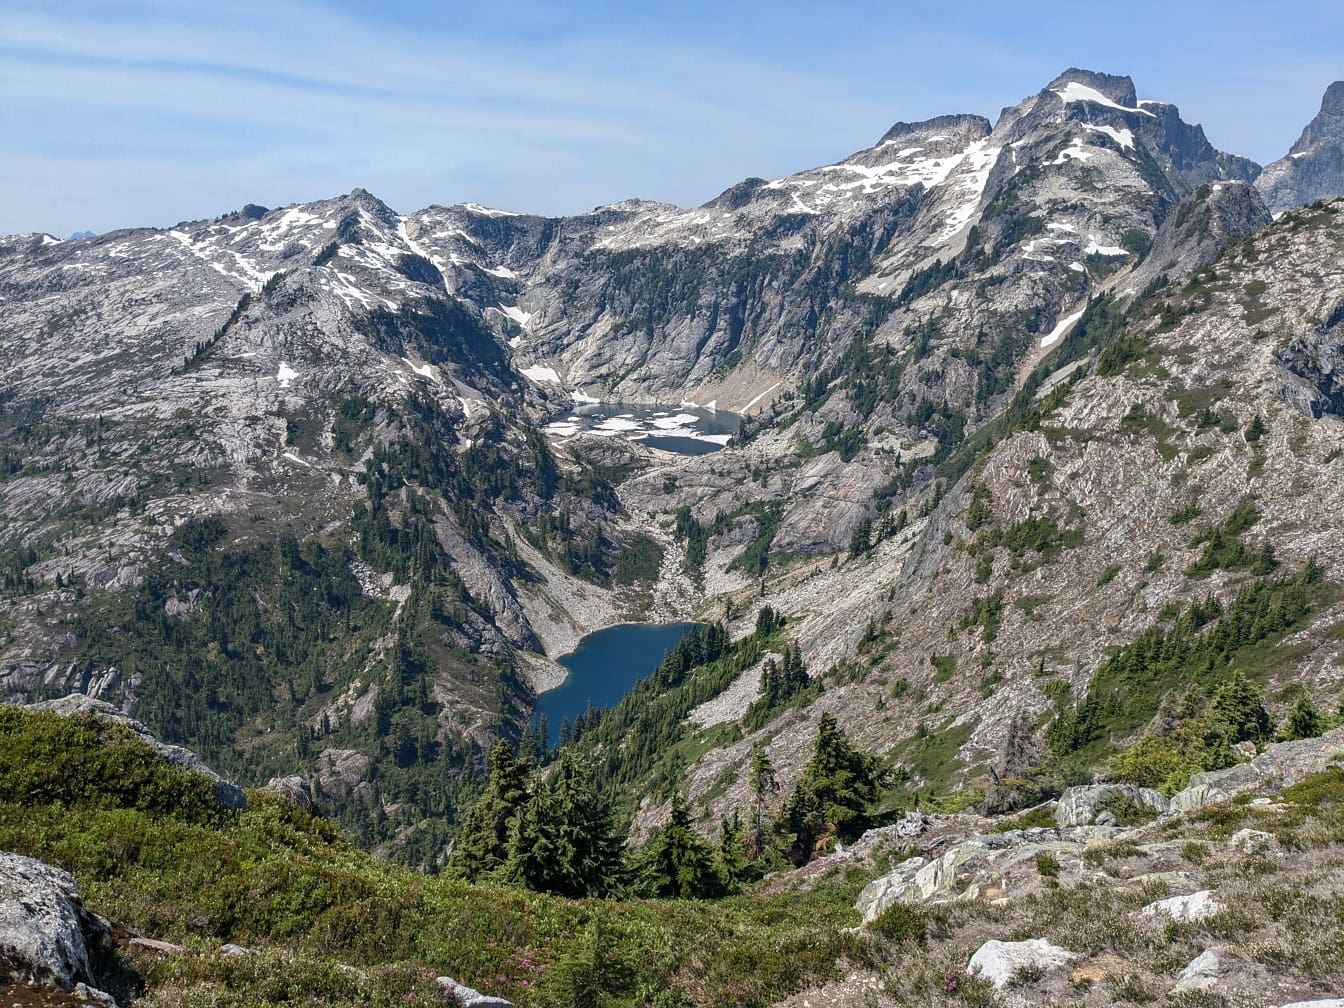 Landschap van bergen met een meer Thornton in het midden in het nationale park North Cascades in Washington